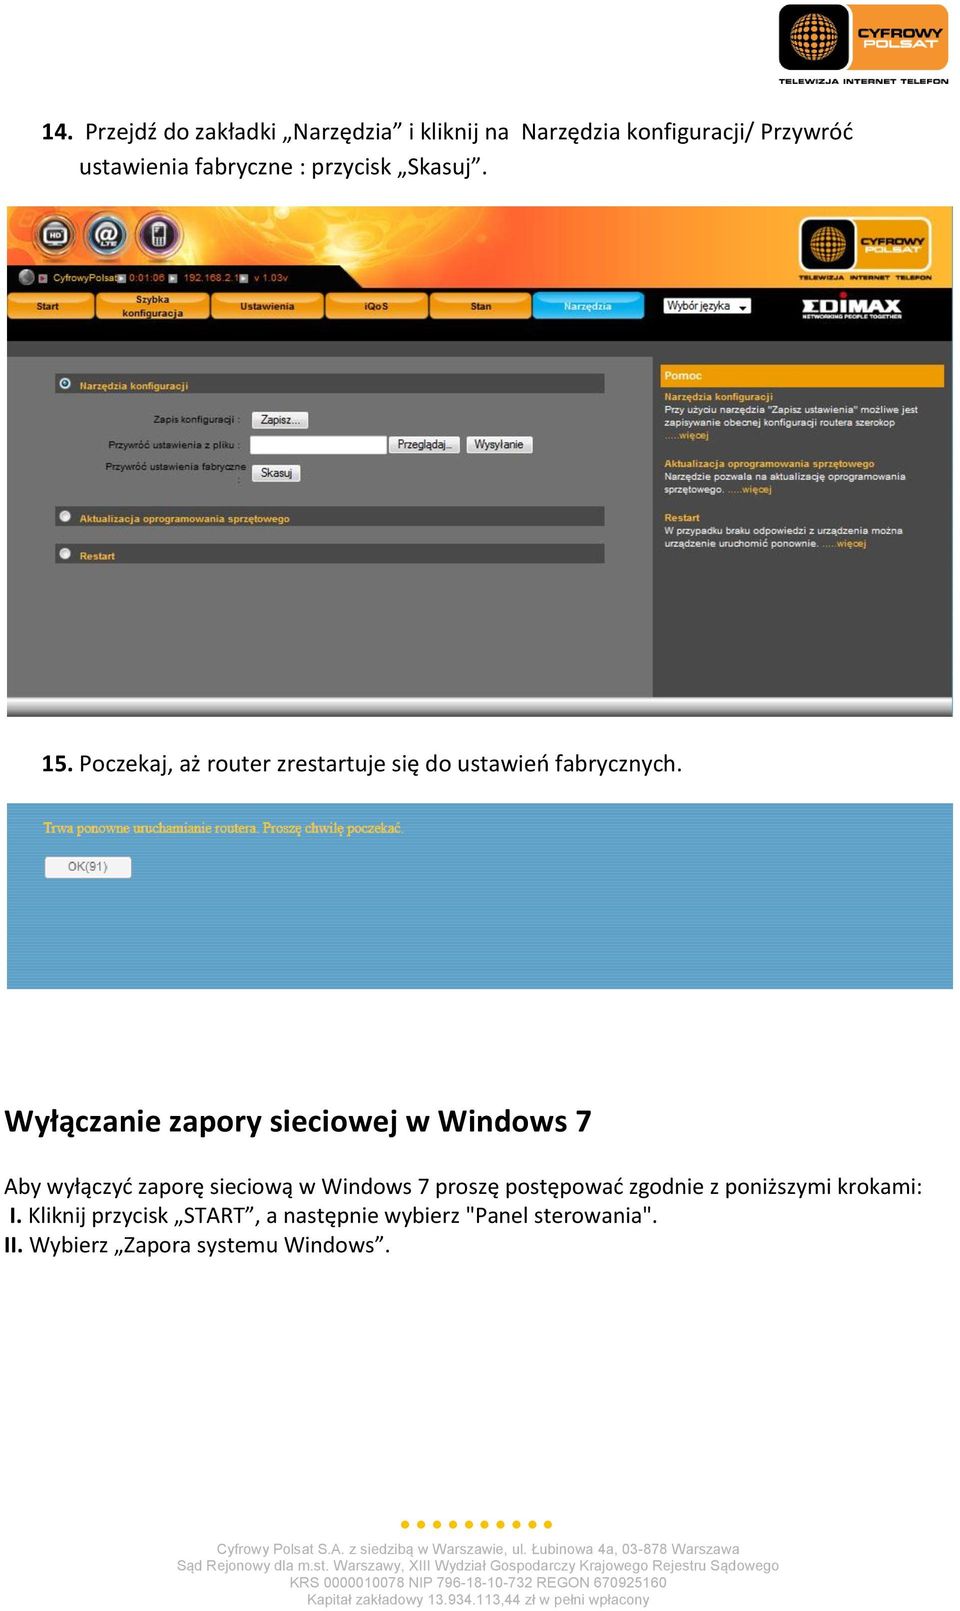 Wyłączanie zapory sieciowej w Windows 7 Aby wyłączyd zaporę sieciową w Windows 7 proszę postępowad